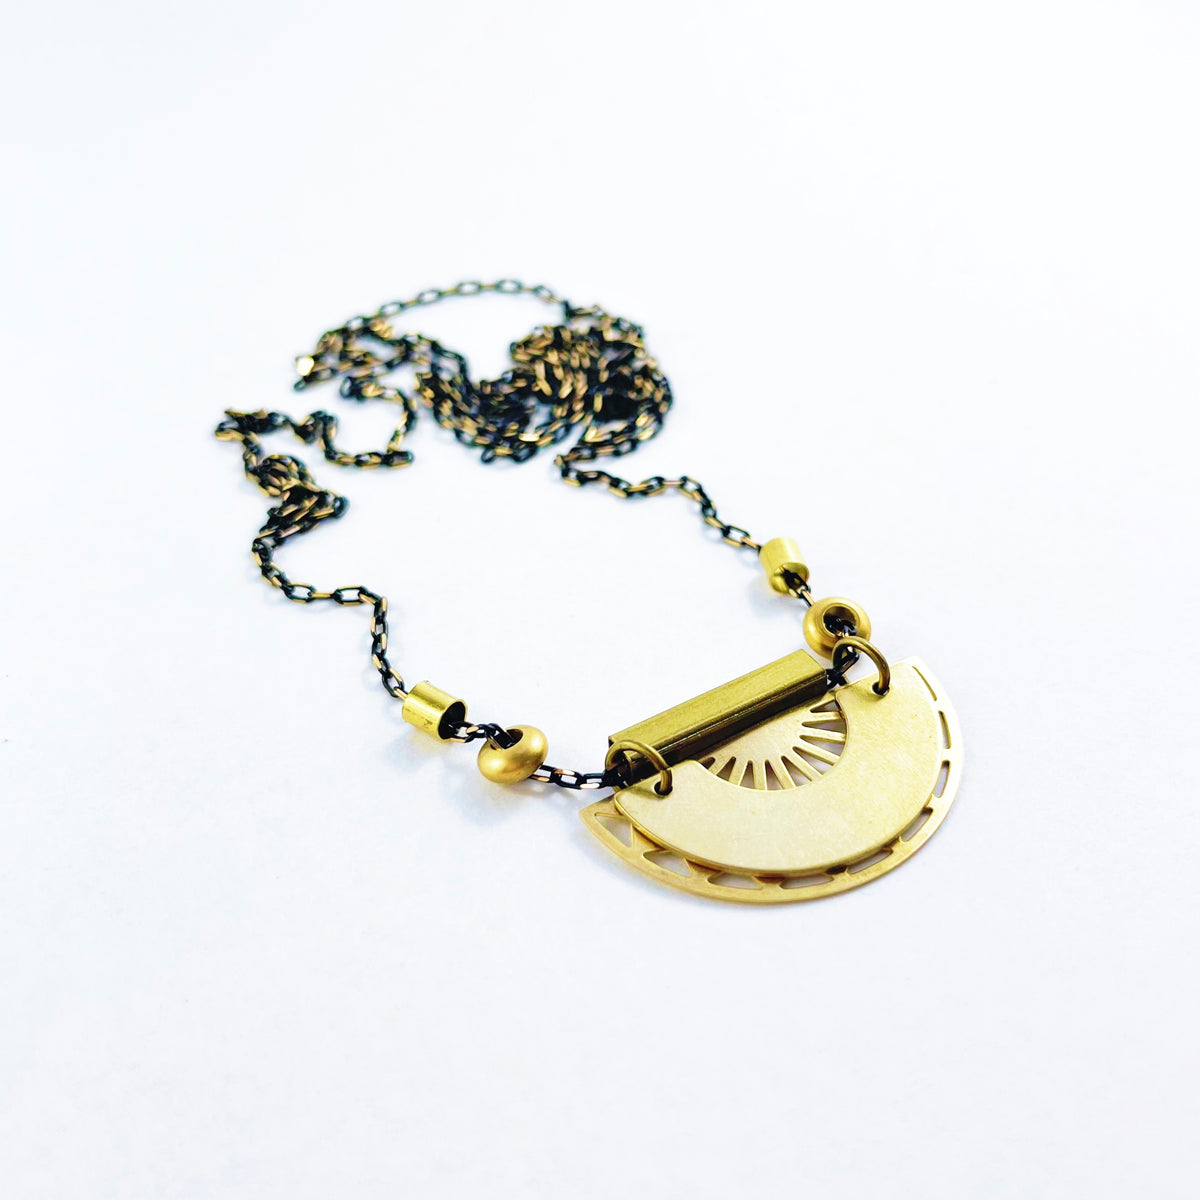 “Echo Echo” Necklace